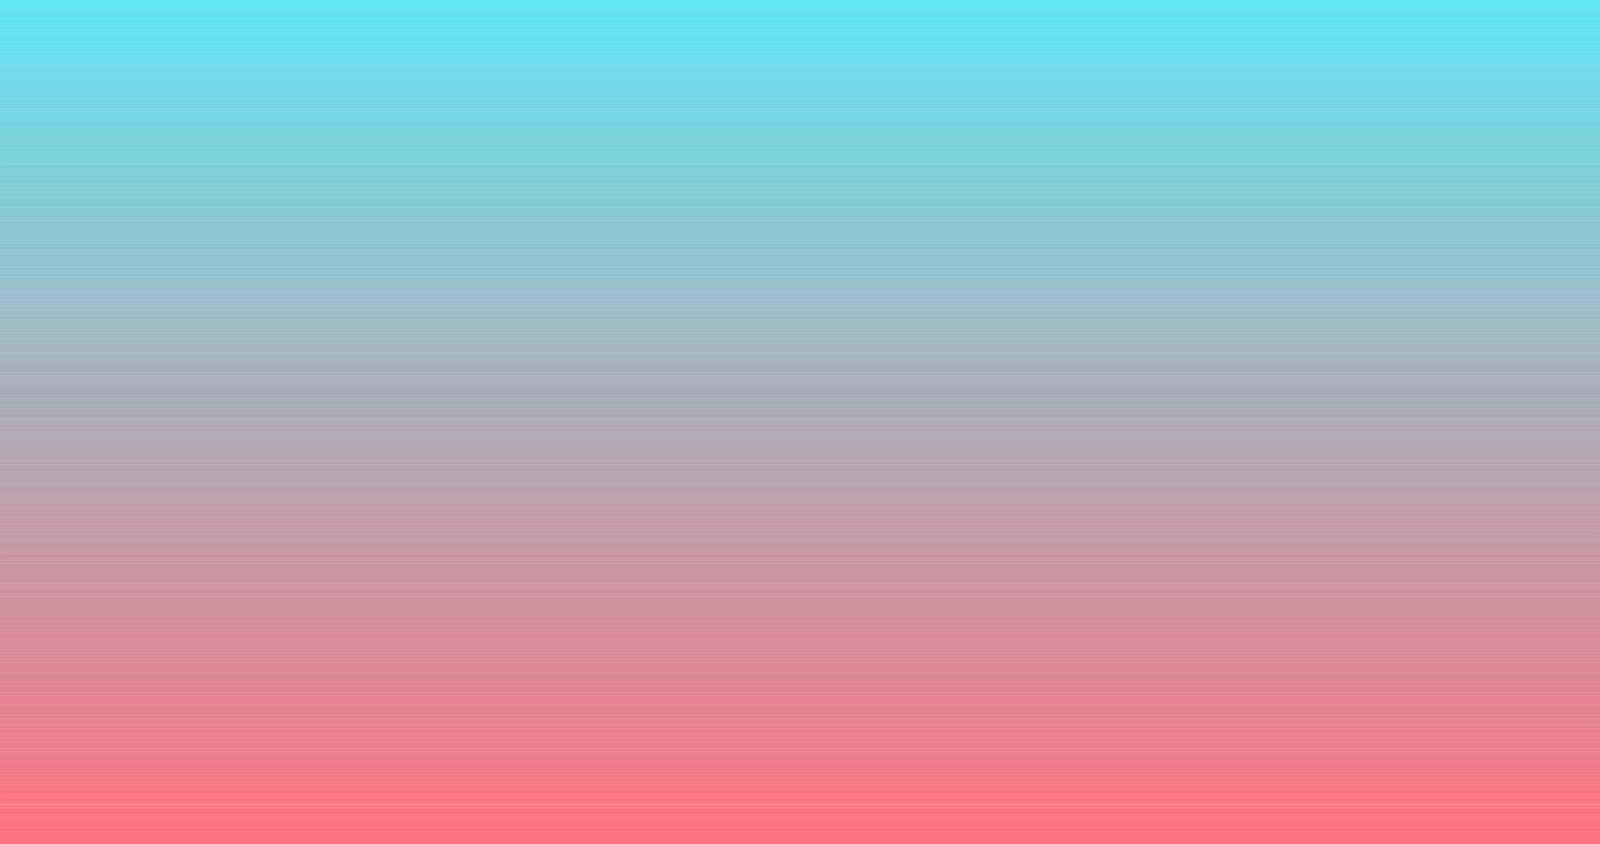 vector pink blue gradient background. Stock vector